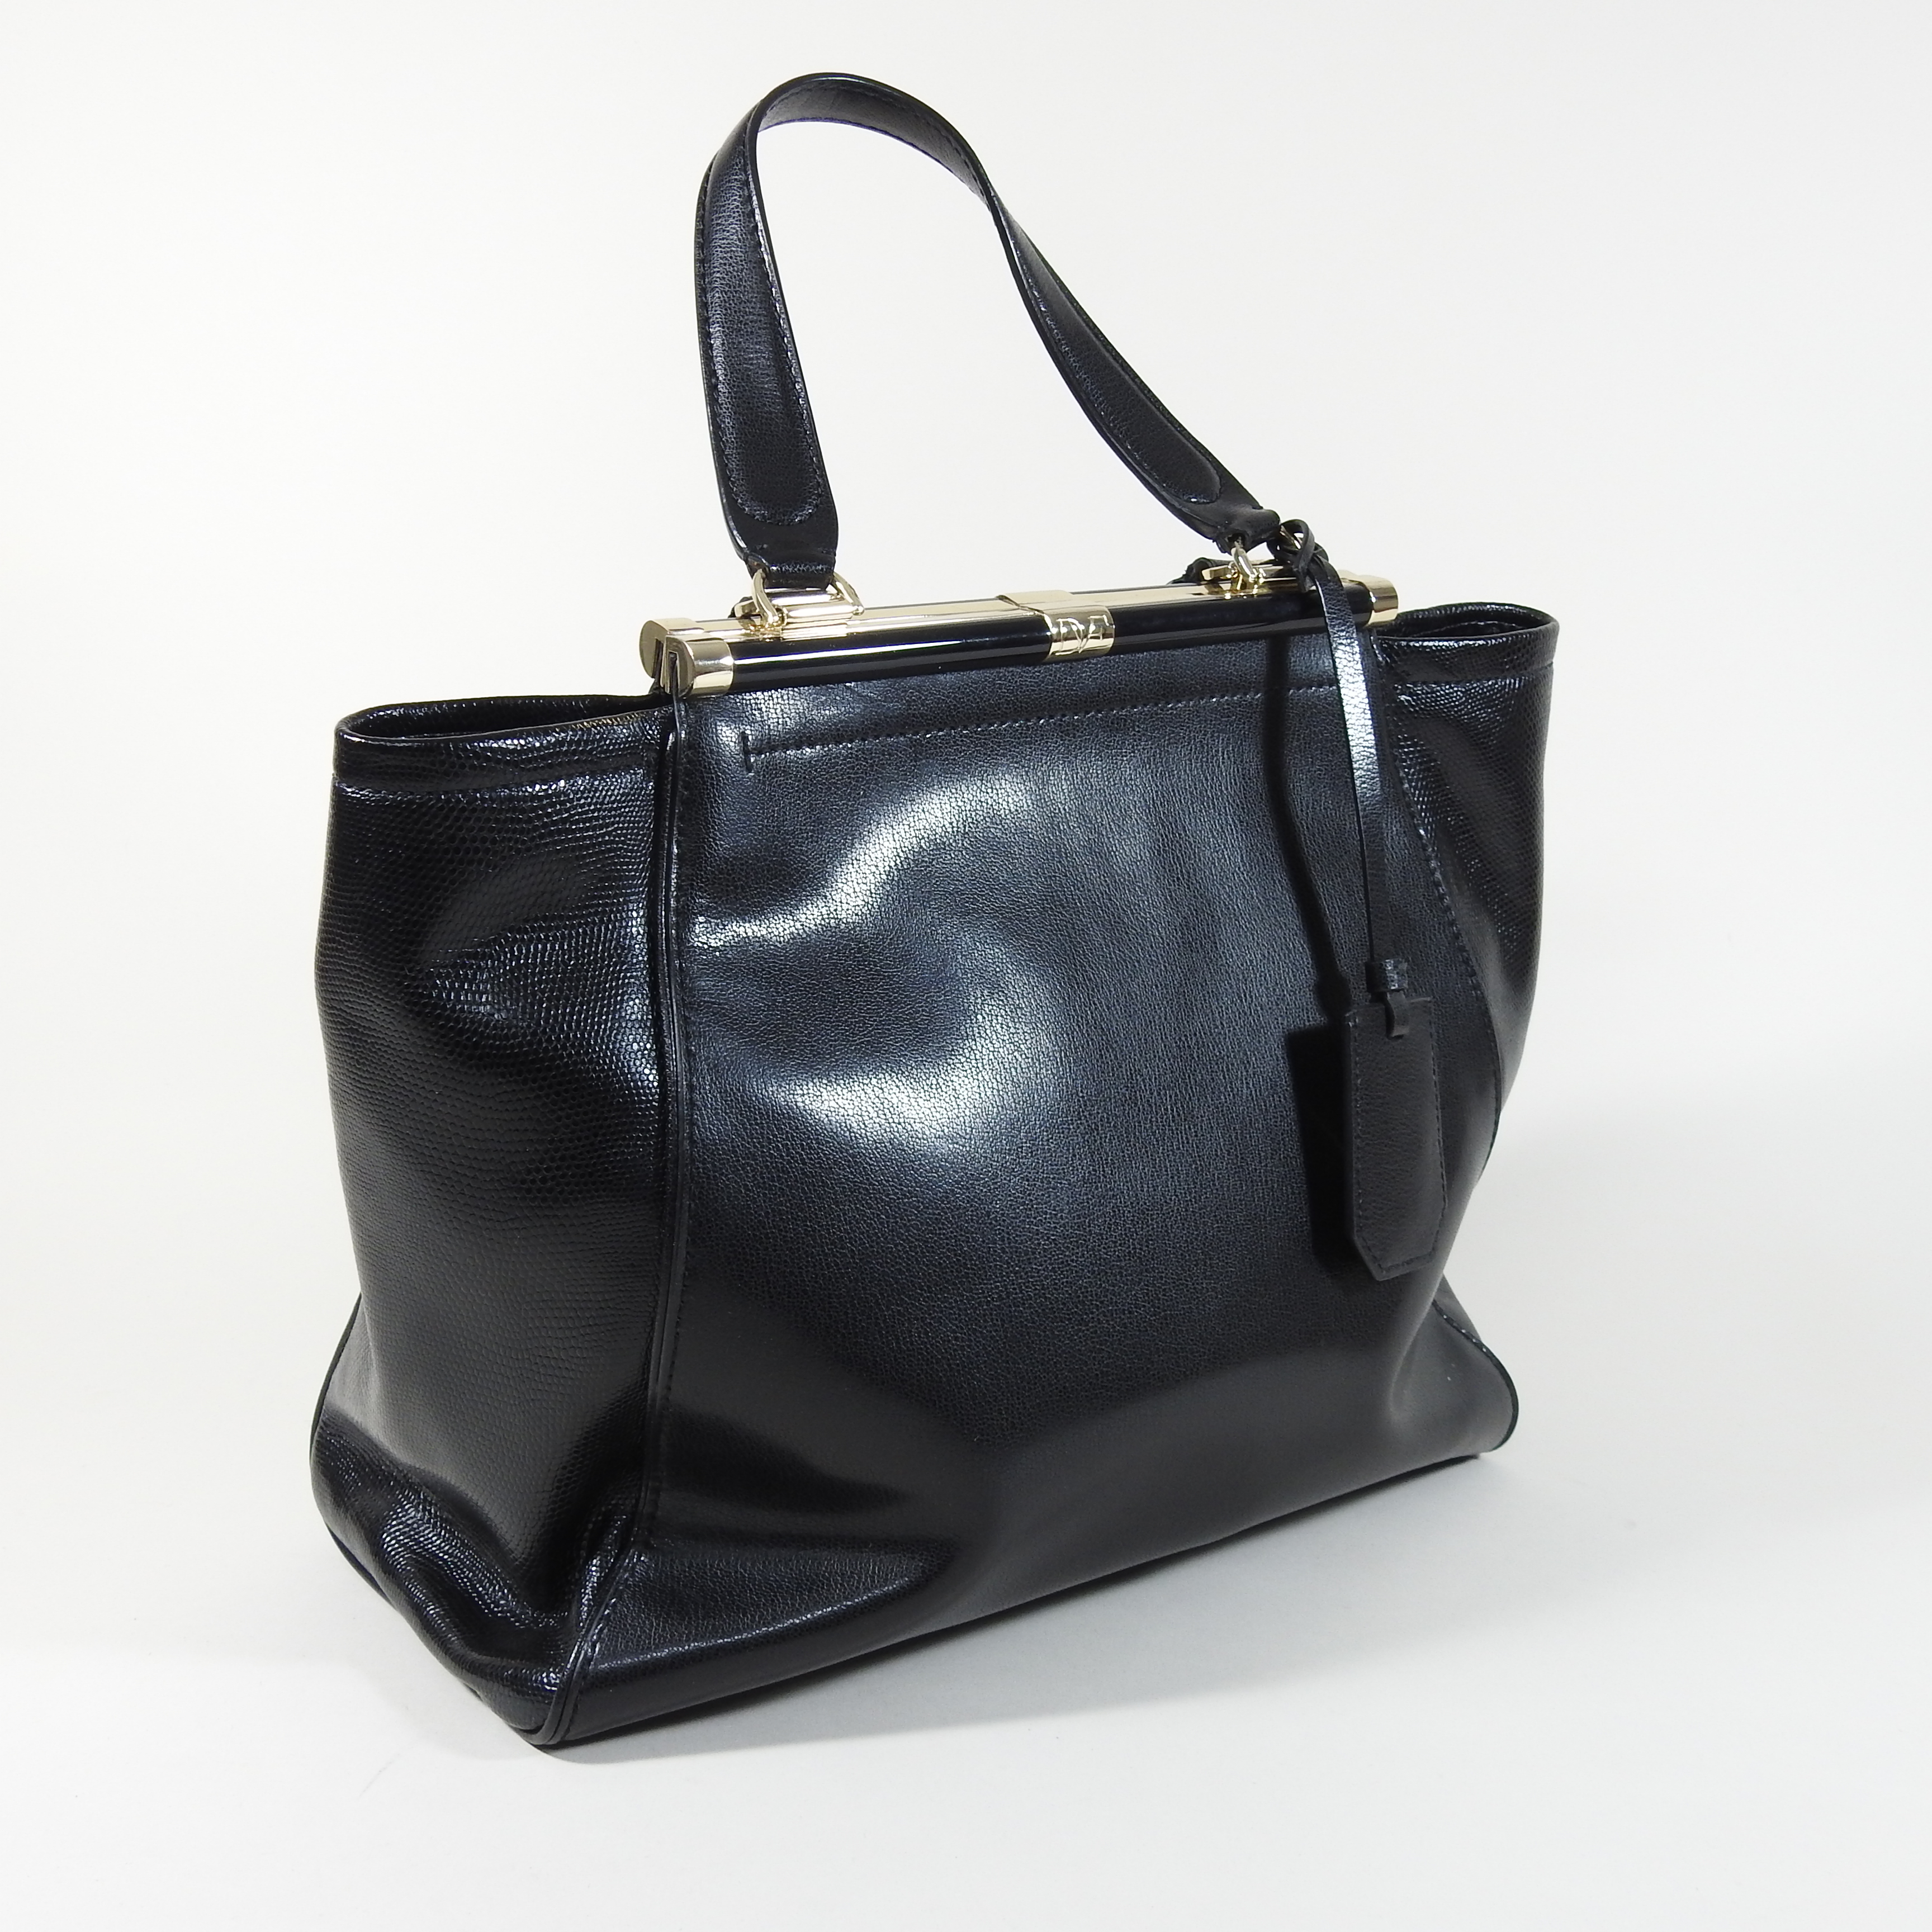 A Diane Von Furstenberg black leather handbag,